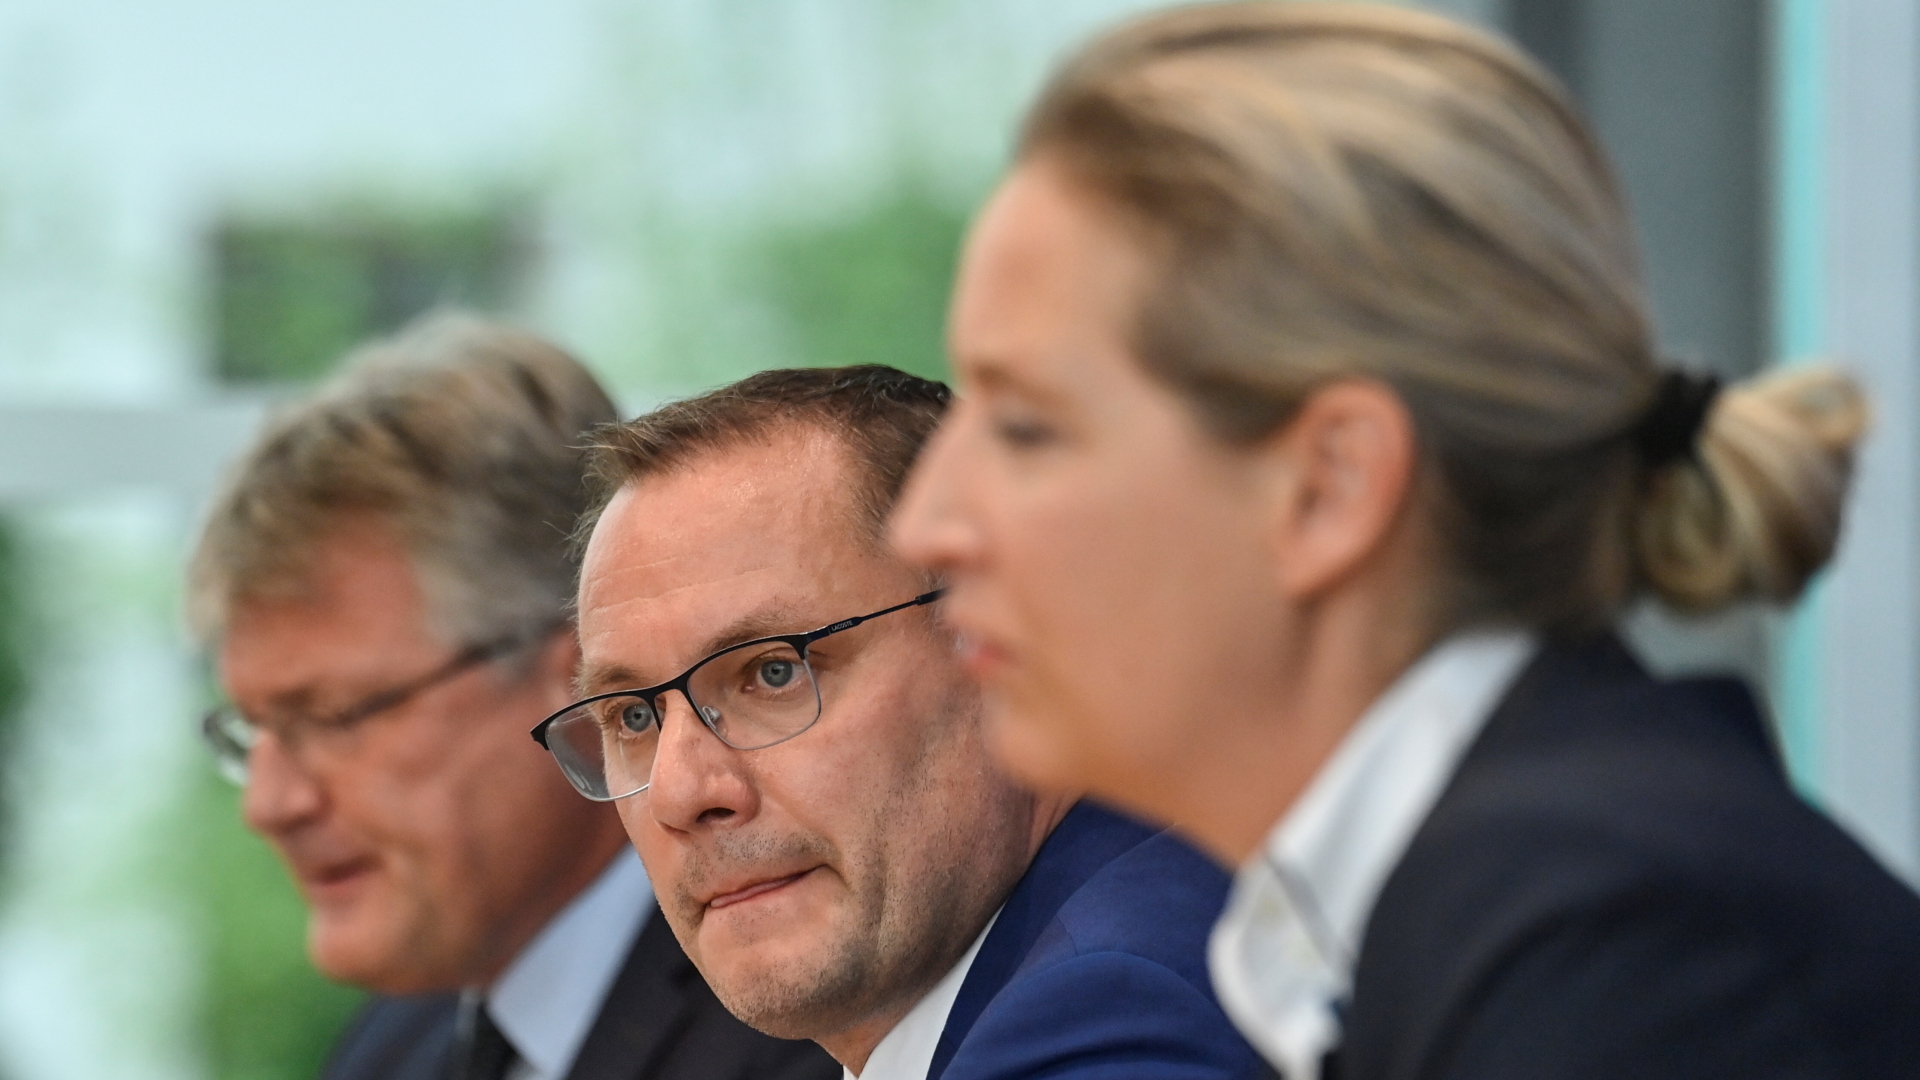 AfD-Parteichef Jörg Meuthen und die Soitzenkandidaten Tino Chrupalla und Alice Weidel  | REUTERS